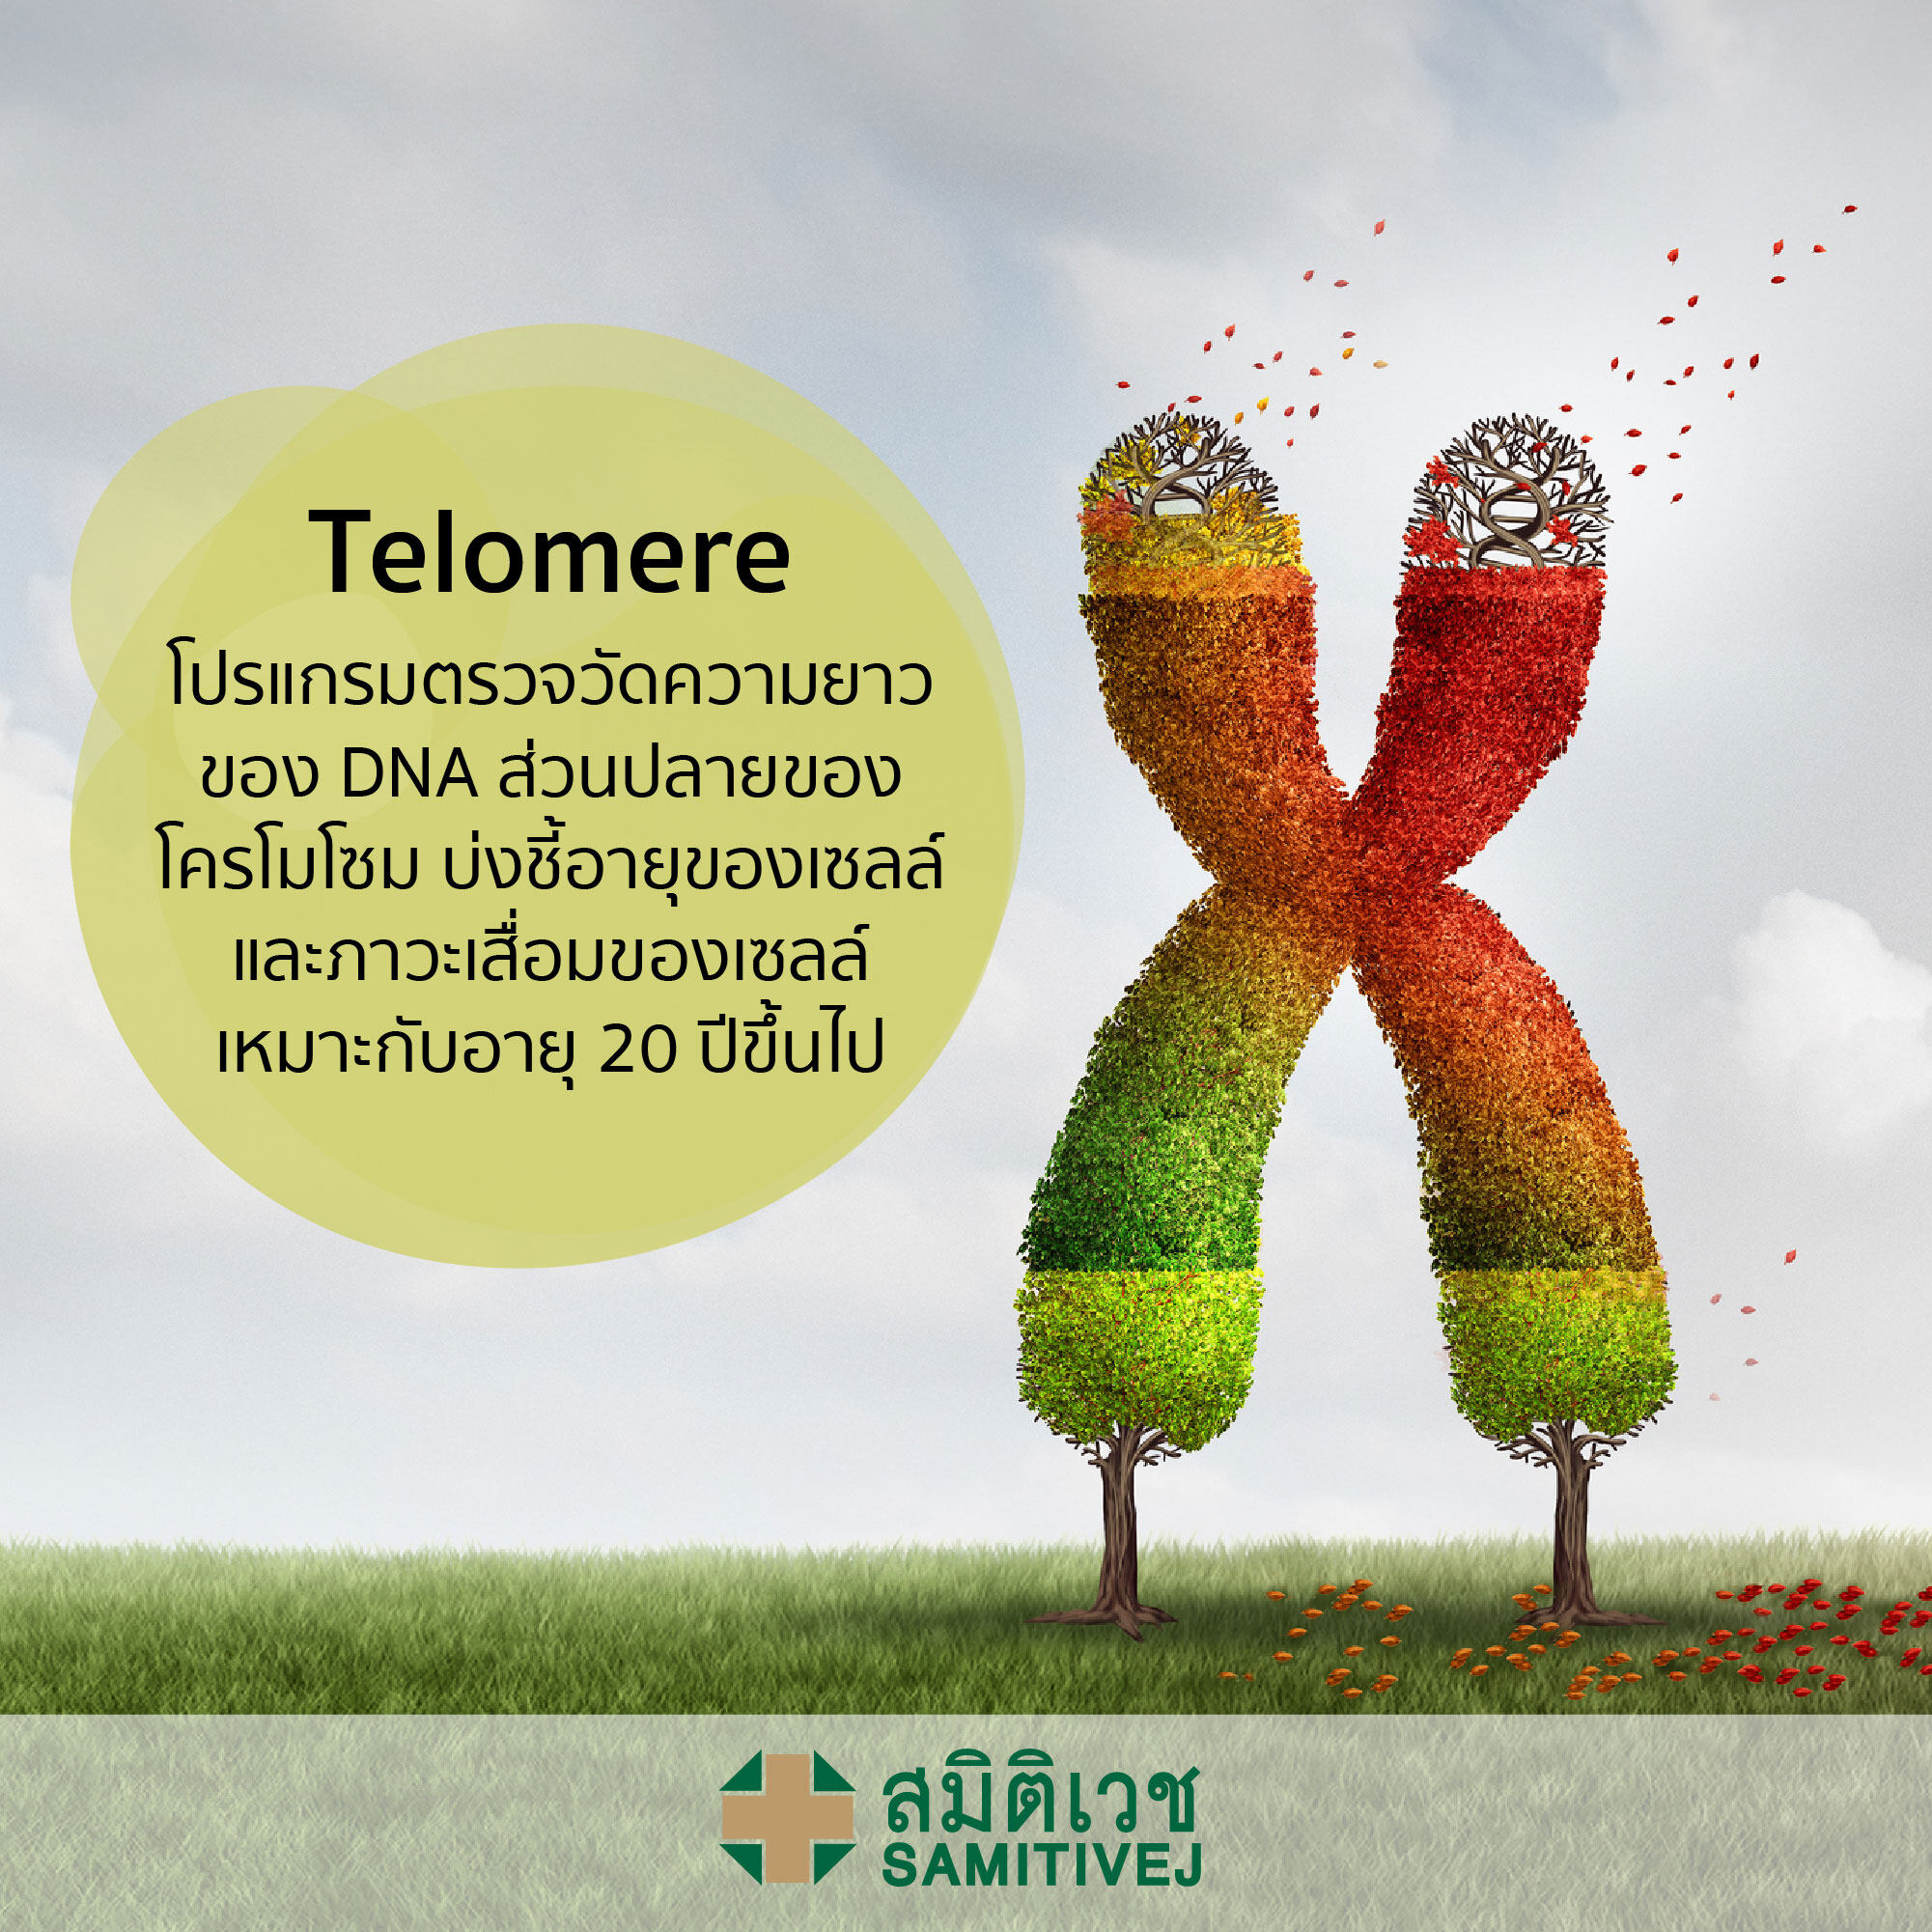 Telomere - โปรแกรมตรวจวัดความยาวของ DNA ส่วนปลายของโครโมโซม - สมิติเวชศรีนครินทร์